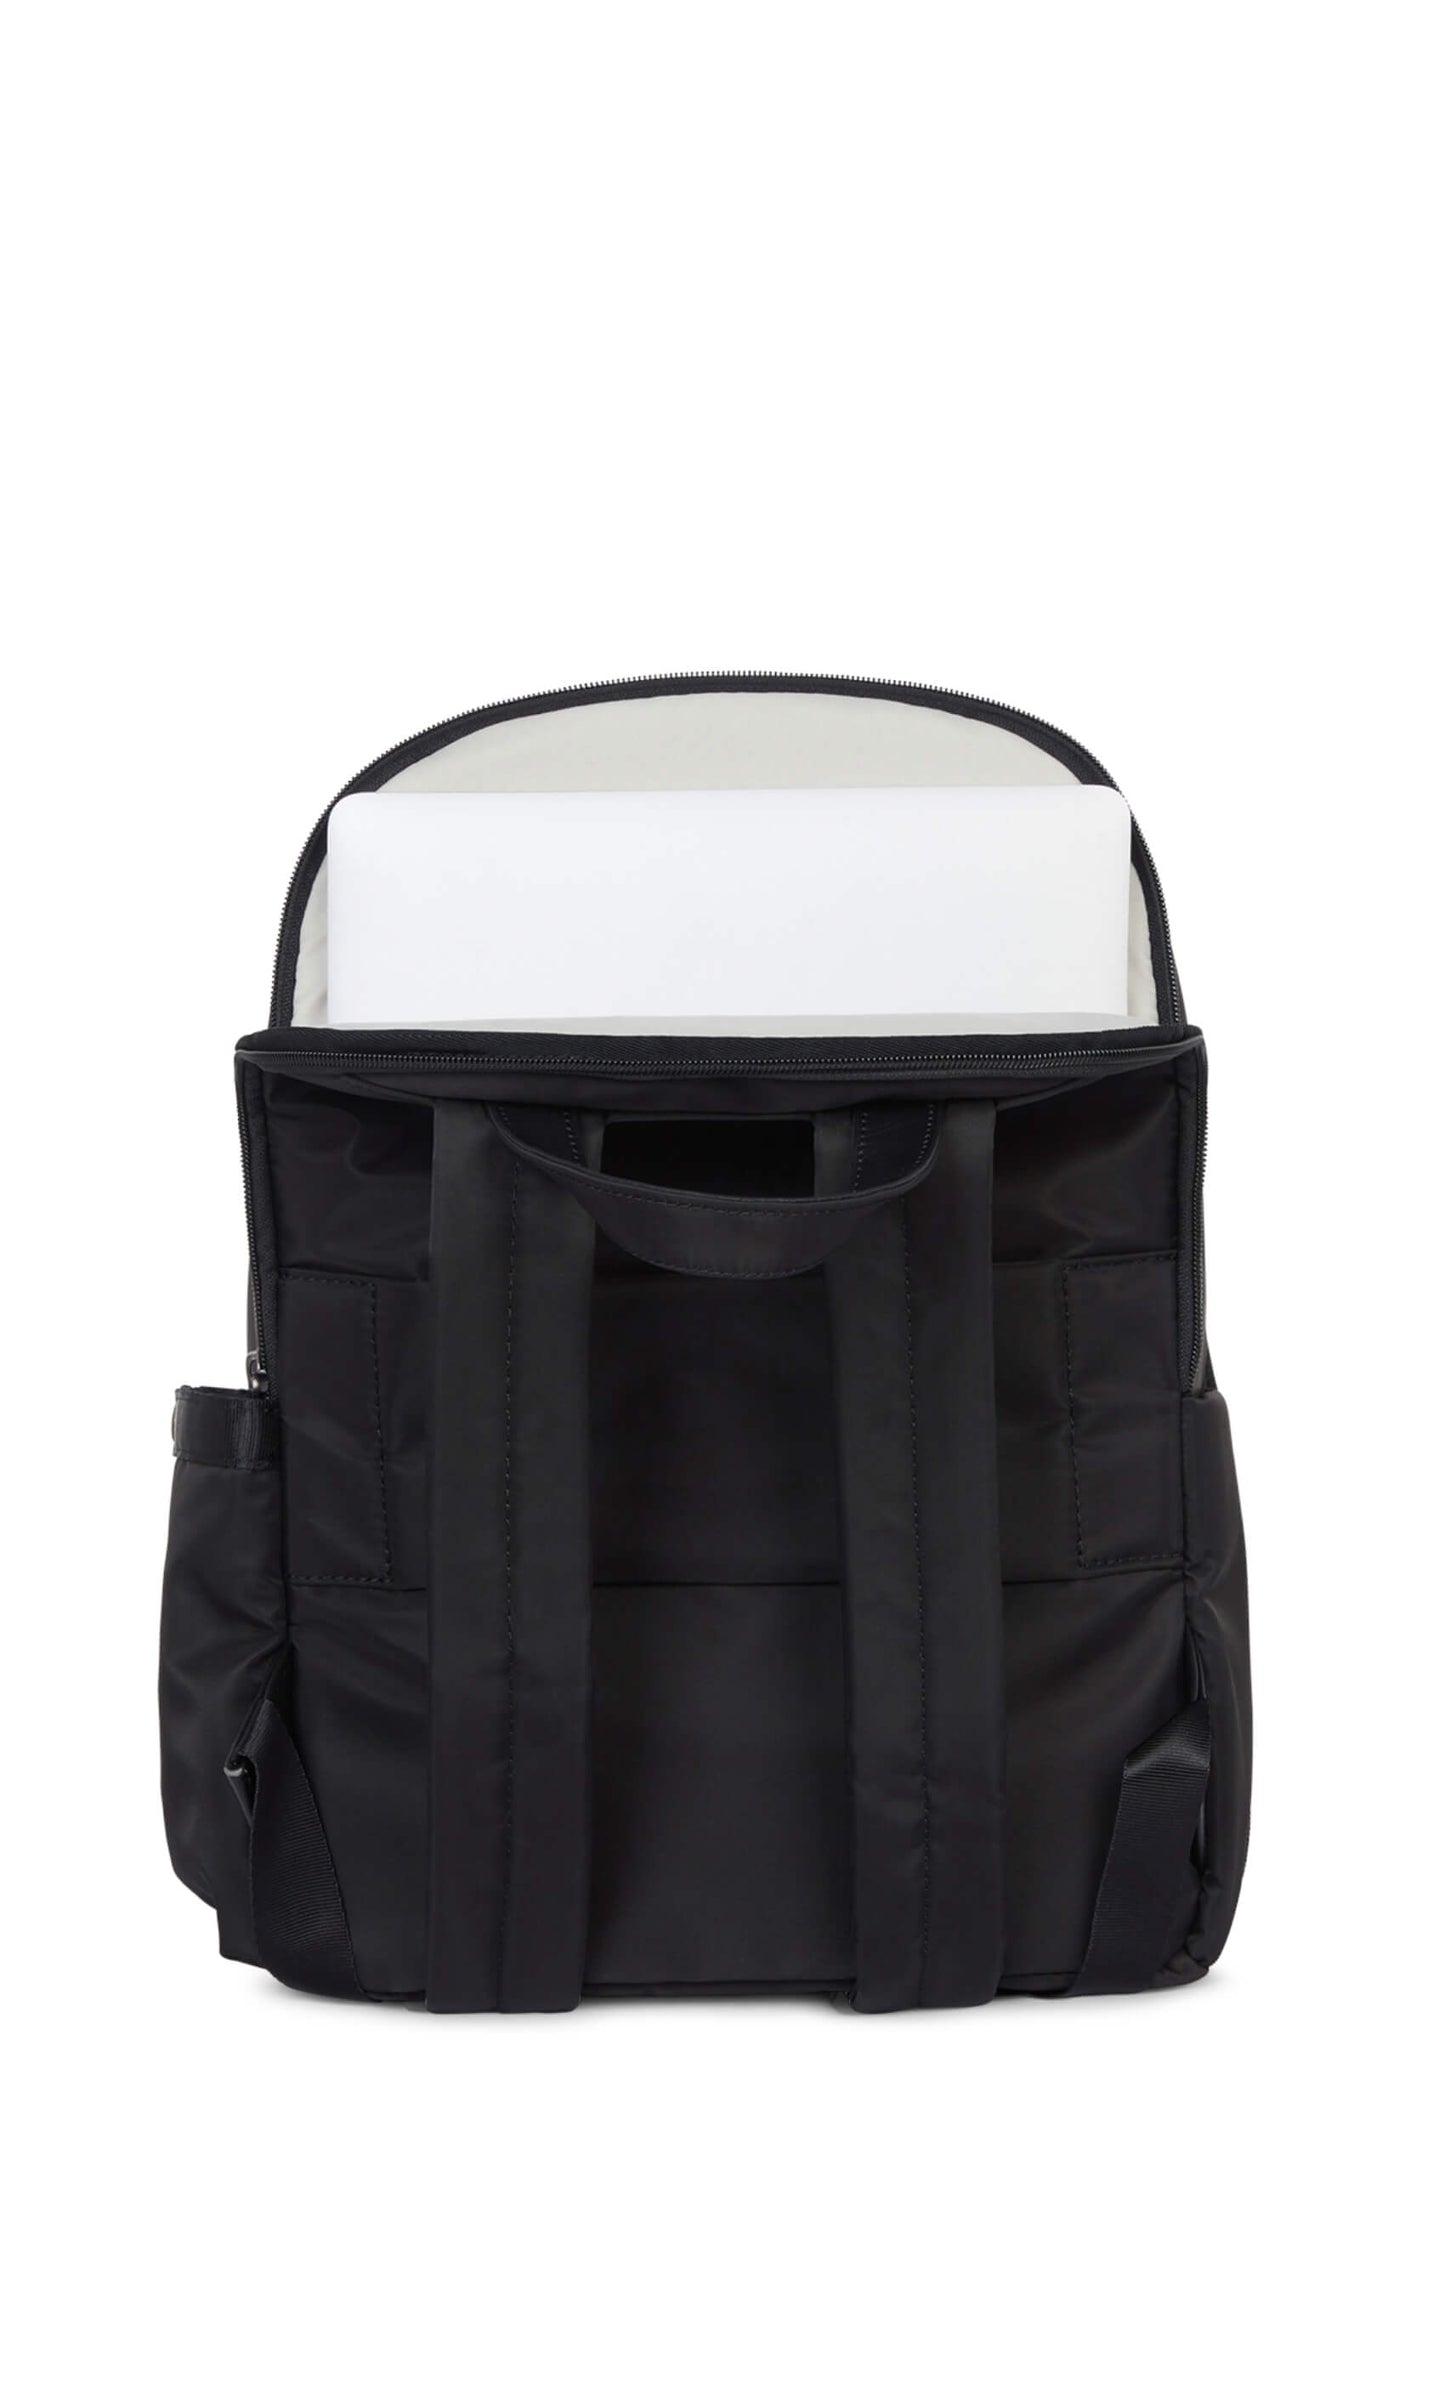 Chelsea backpack in black